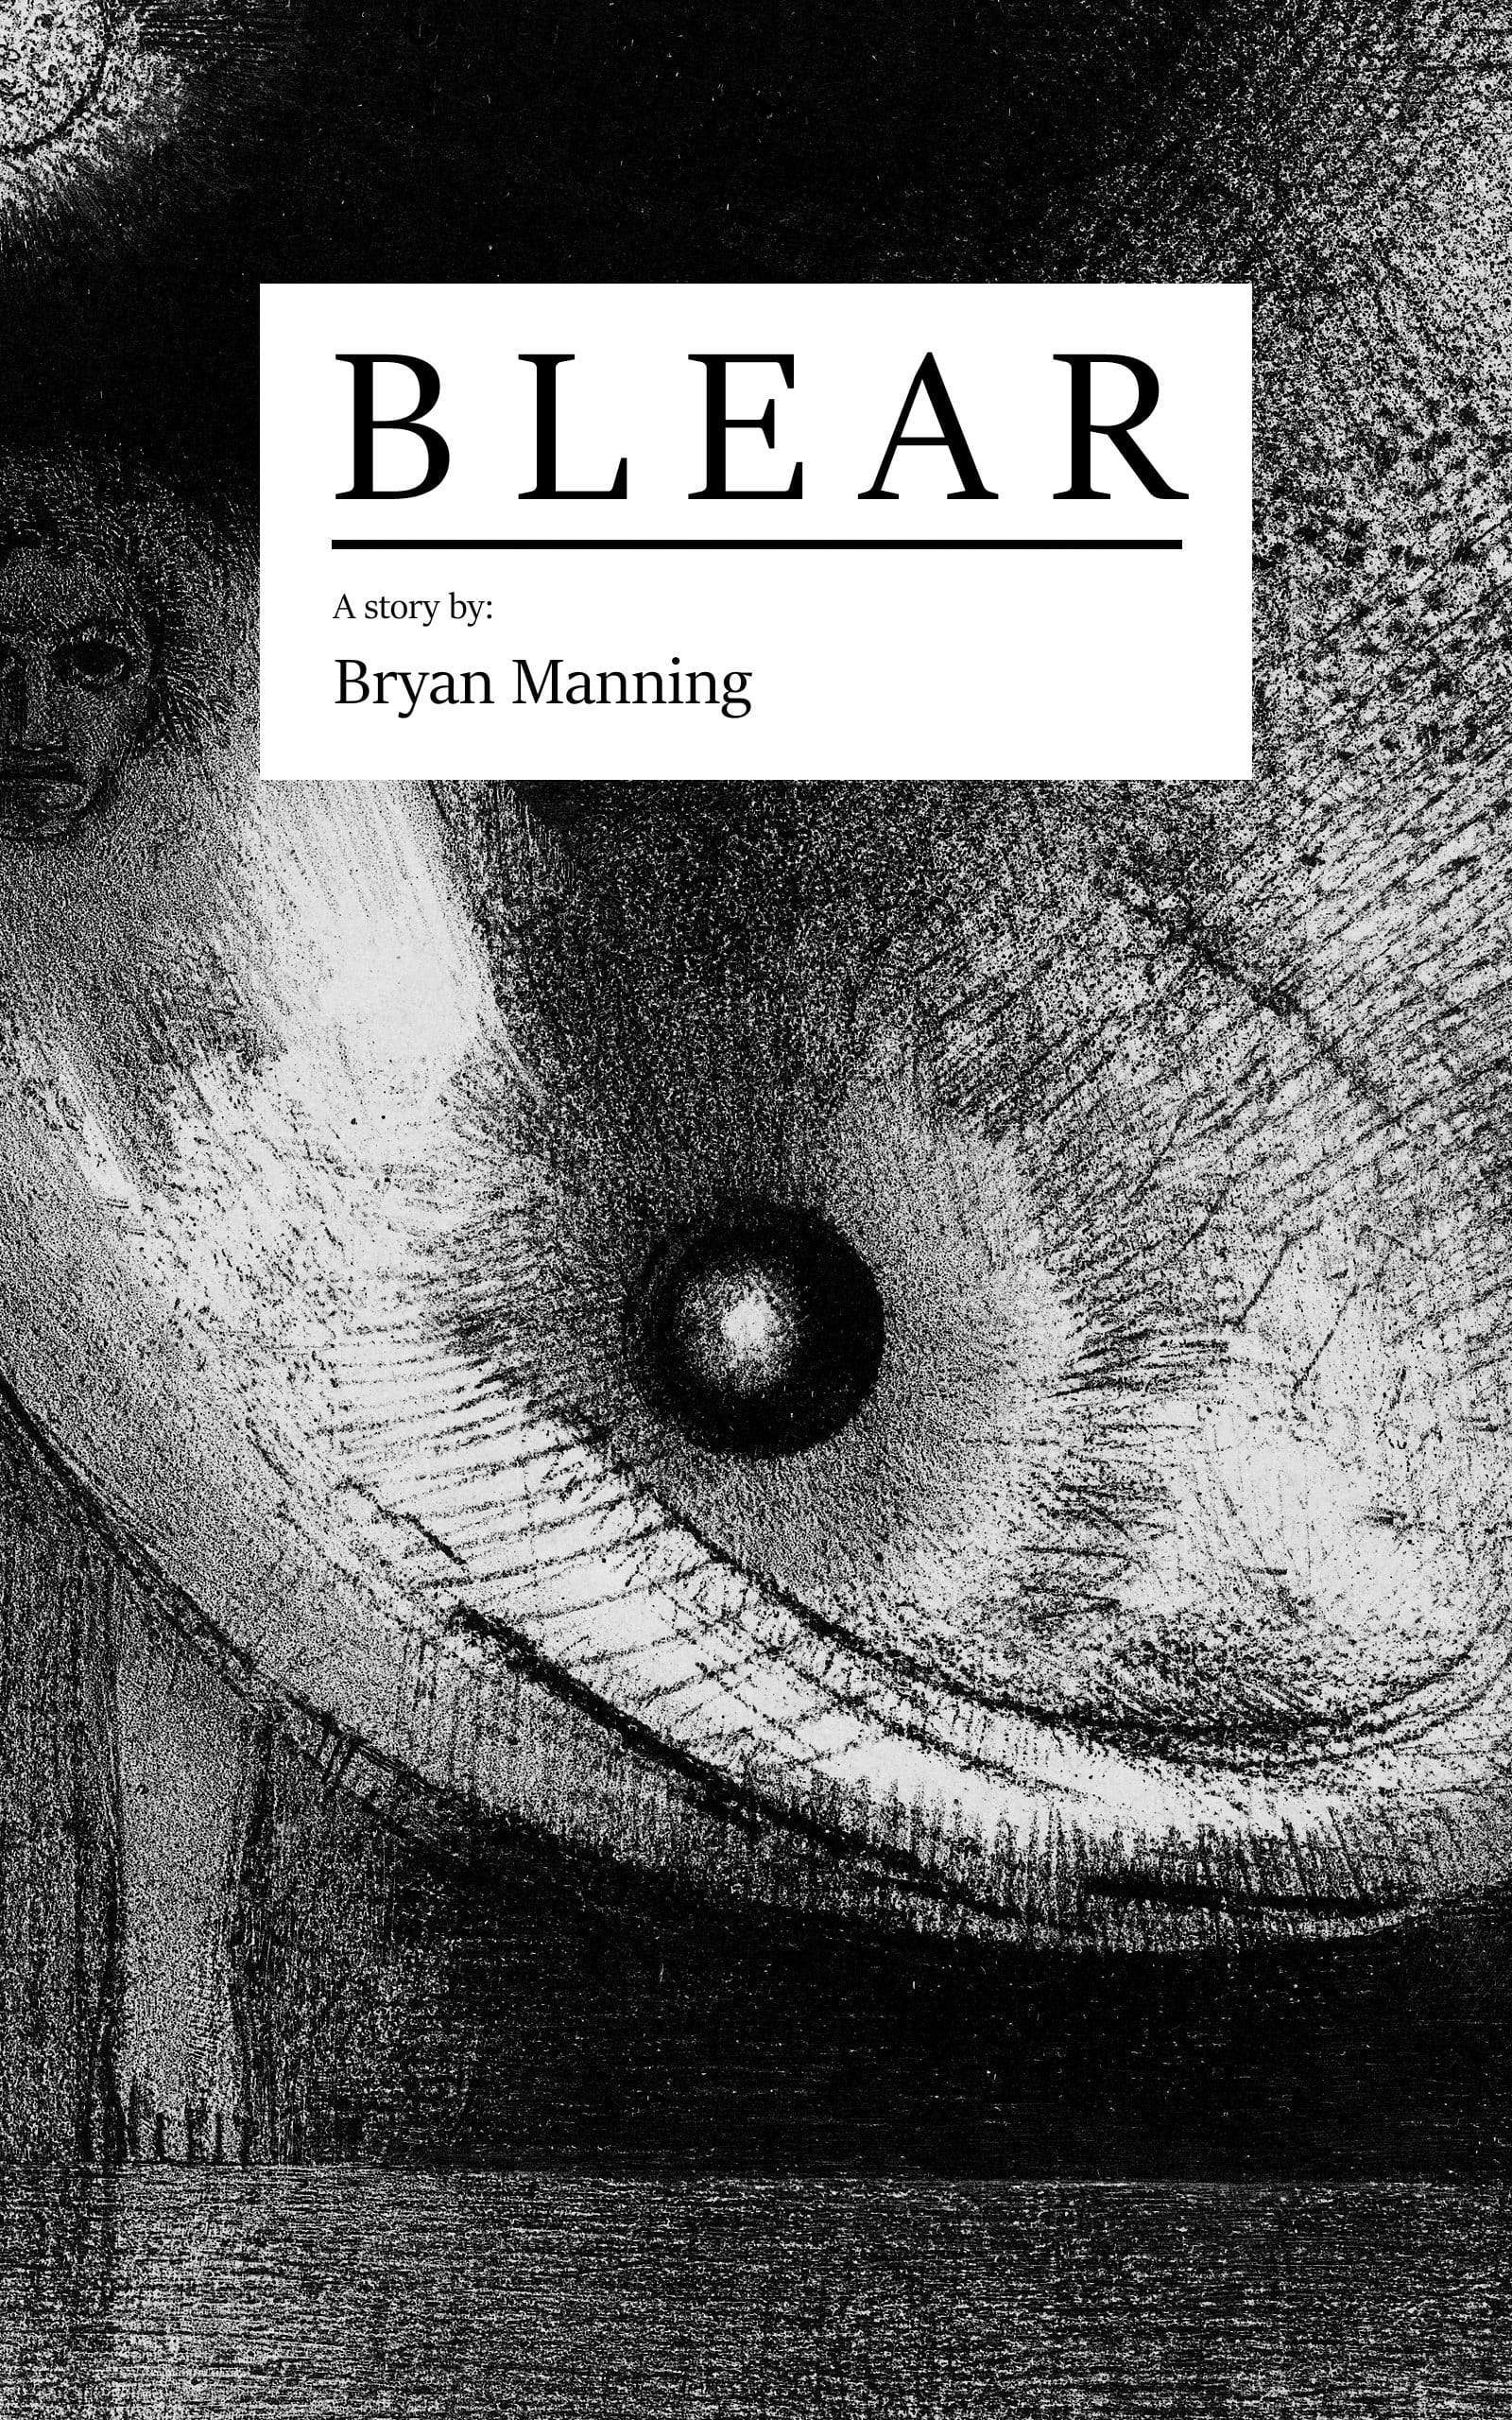 The Flenser Zine Bryan Manning "Blear" Zine